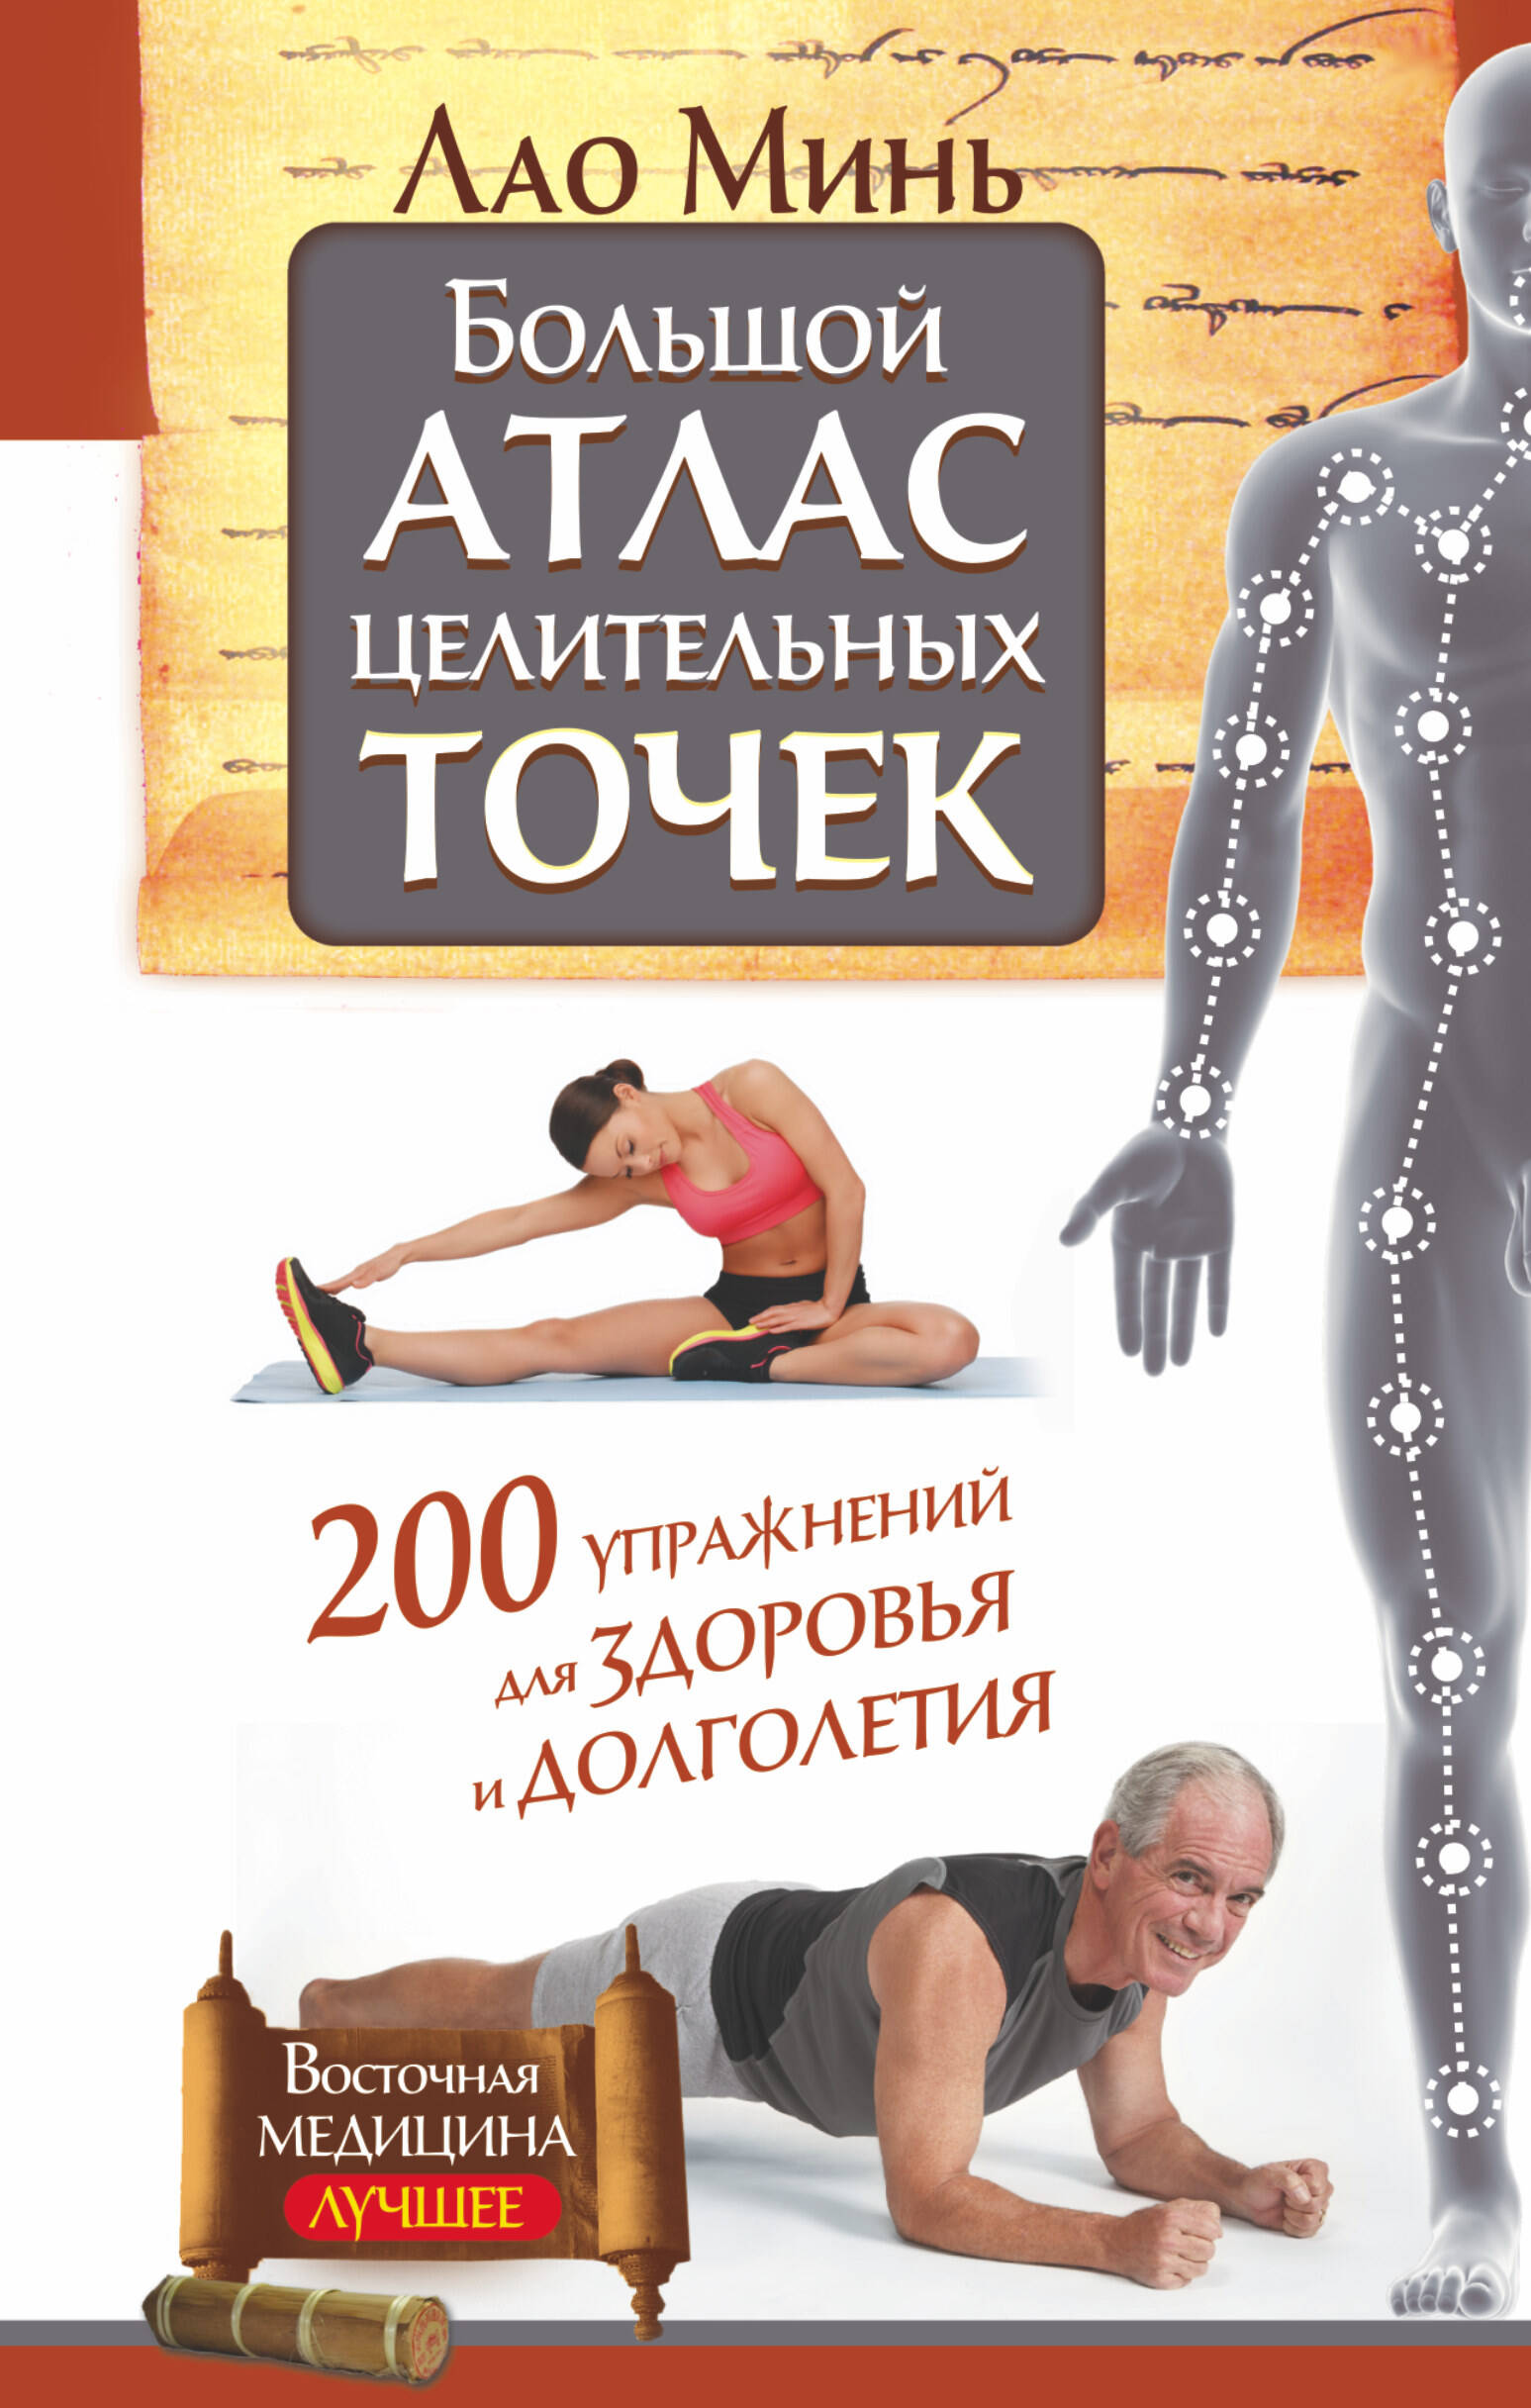 Минь Лао  Большой атлас целительных точек. 200 упражнений для здоровья и долголетия - страница 0